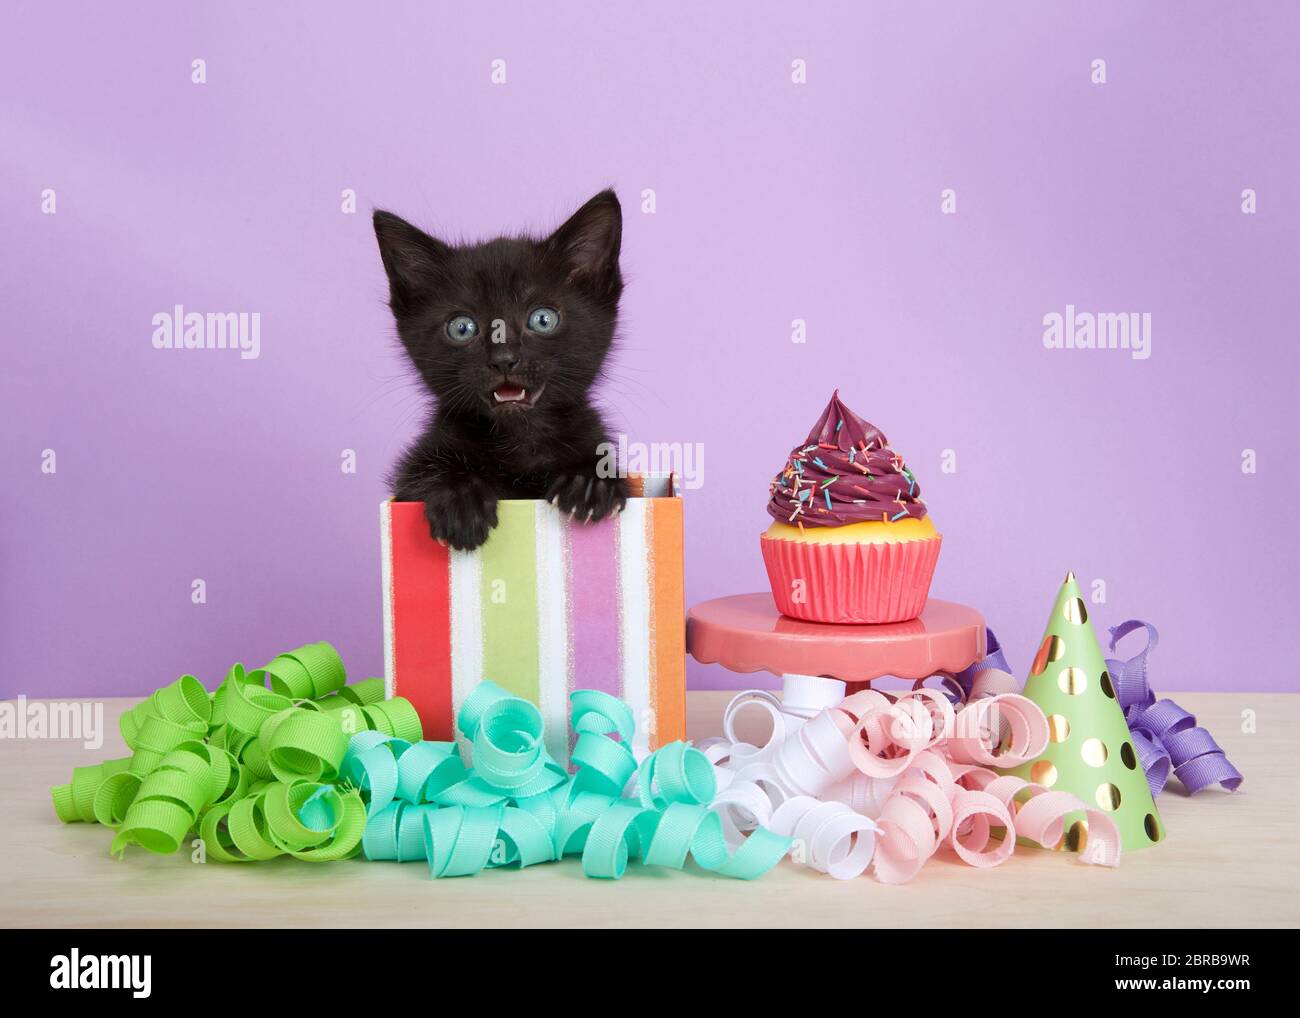 gatito negro en colorido rayado cumpleaños caja presente con taza de pastel  y streamers en un suelo de madera, fondo púrpura. Gatito meowing mirando  directamente Fotografía de stock - Alamy